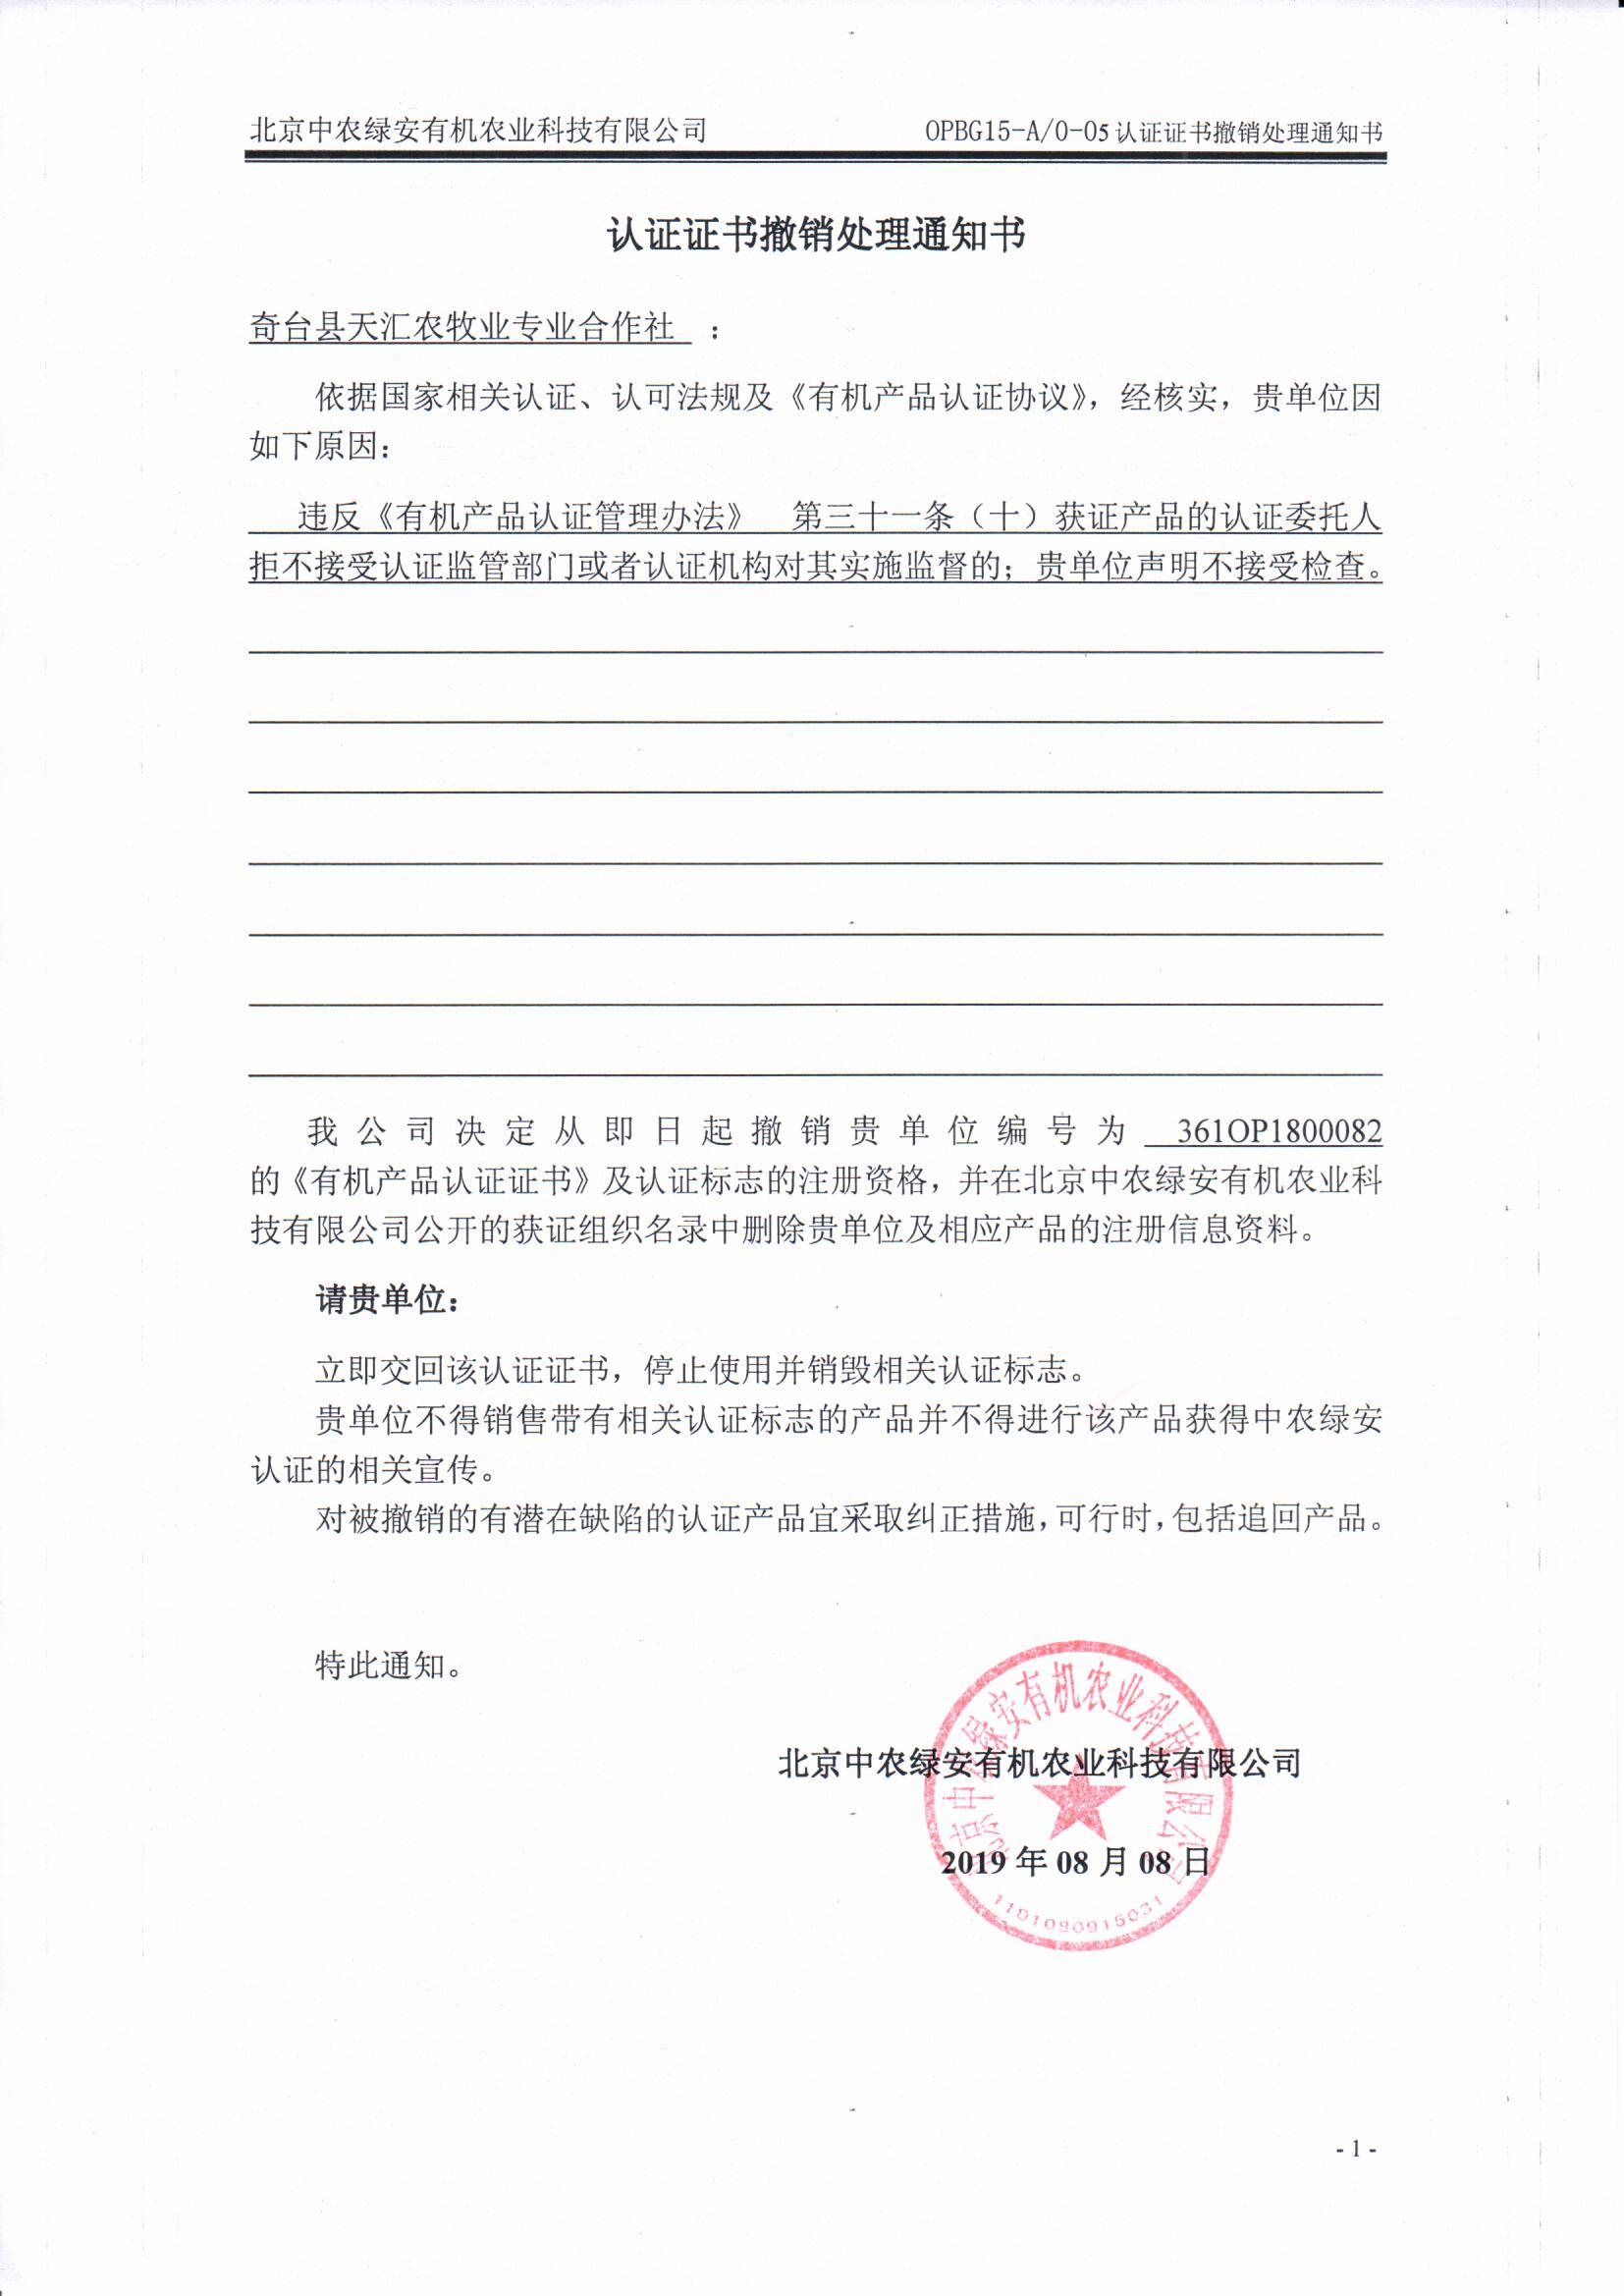 奇台县天汇农牧业专业合作社证书注销通知